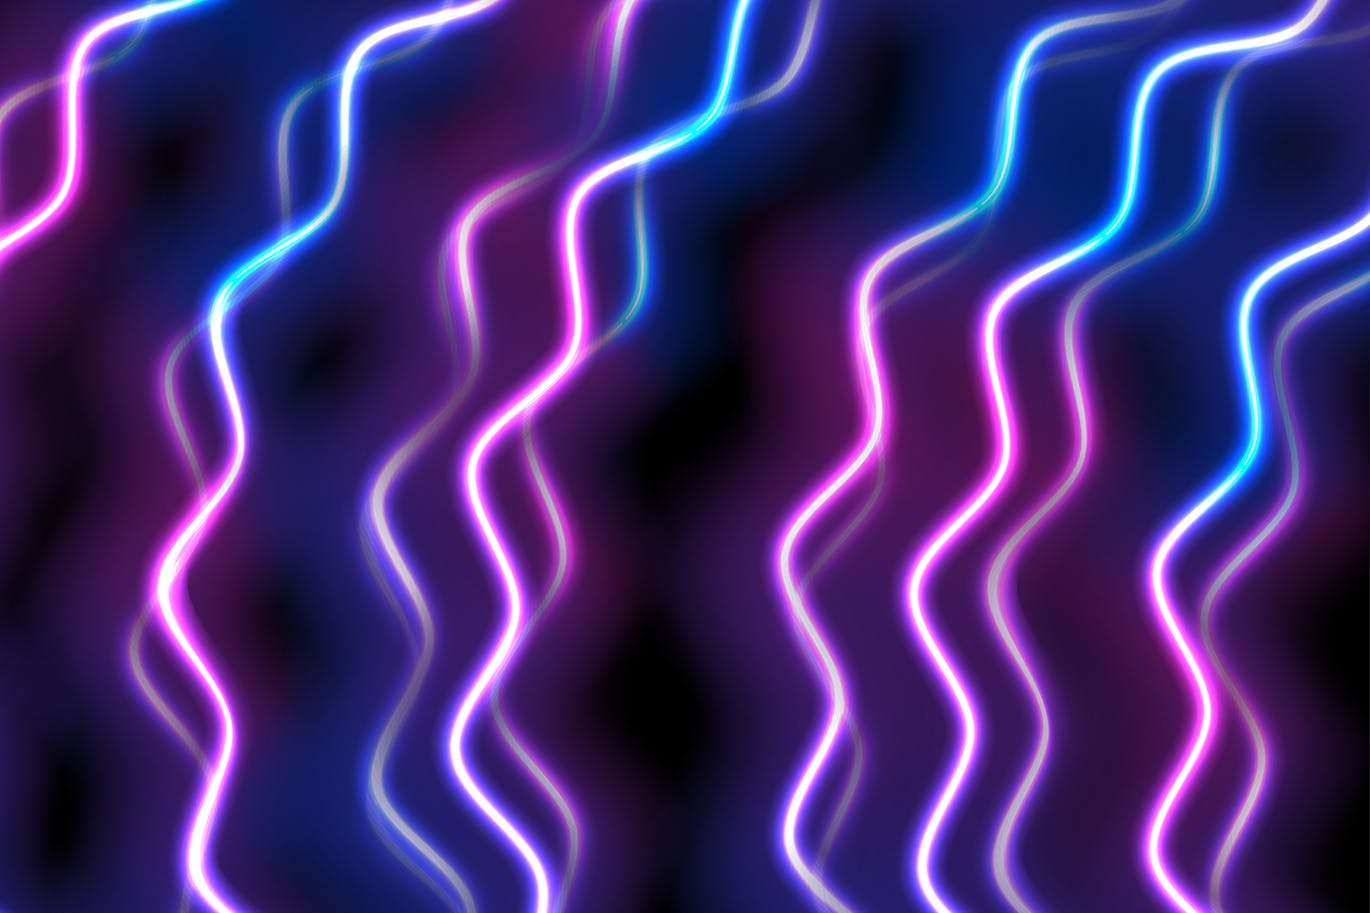 蓝紫色霓虹波高清抽象第一素材精选背景素材 Blue purple neon waves abstract background插图